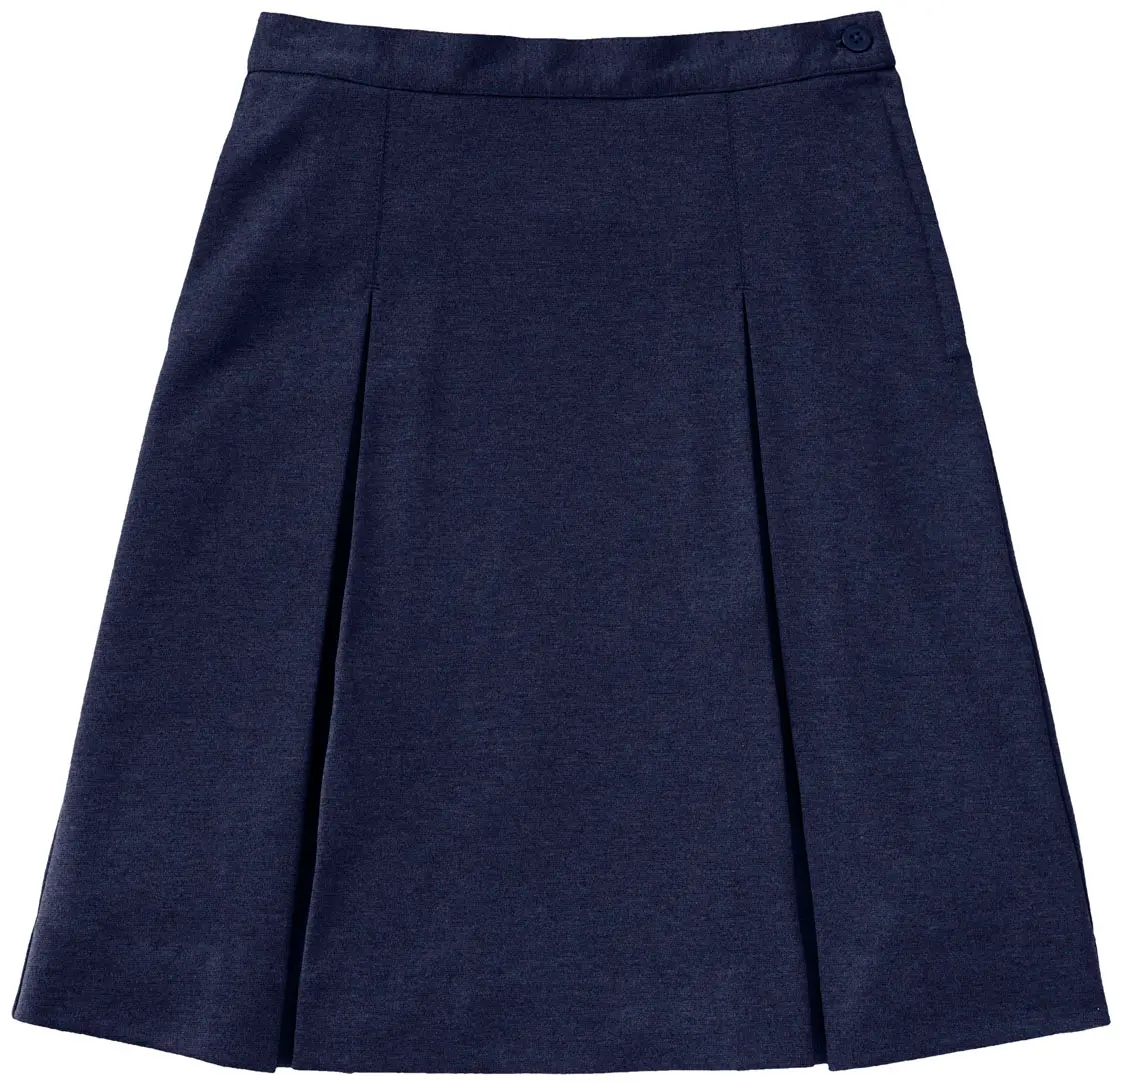 Juniors Ponte Knit Kick Pleat Skirt-Classroom Uniforms